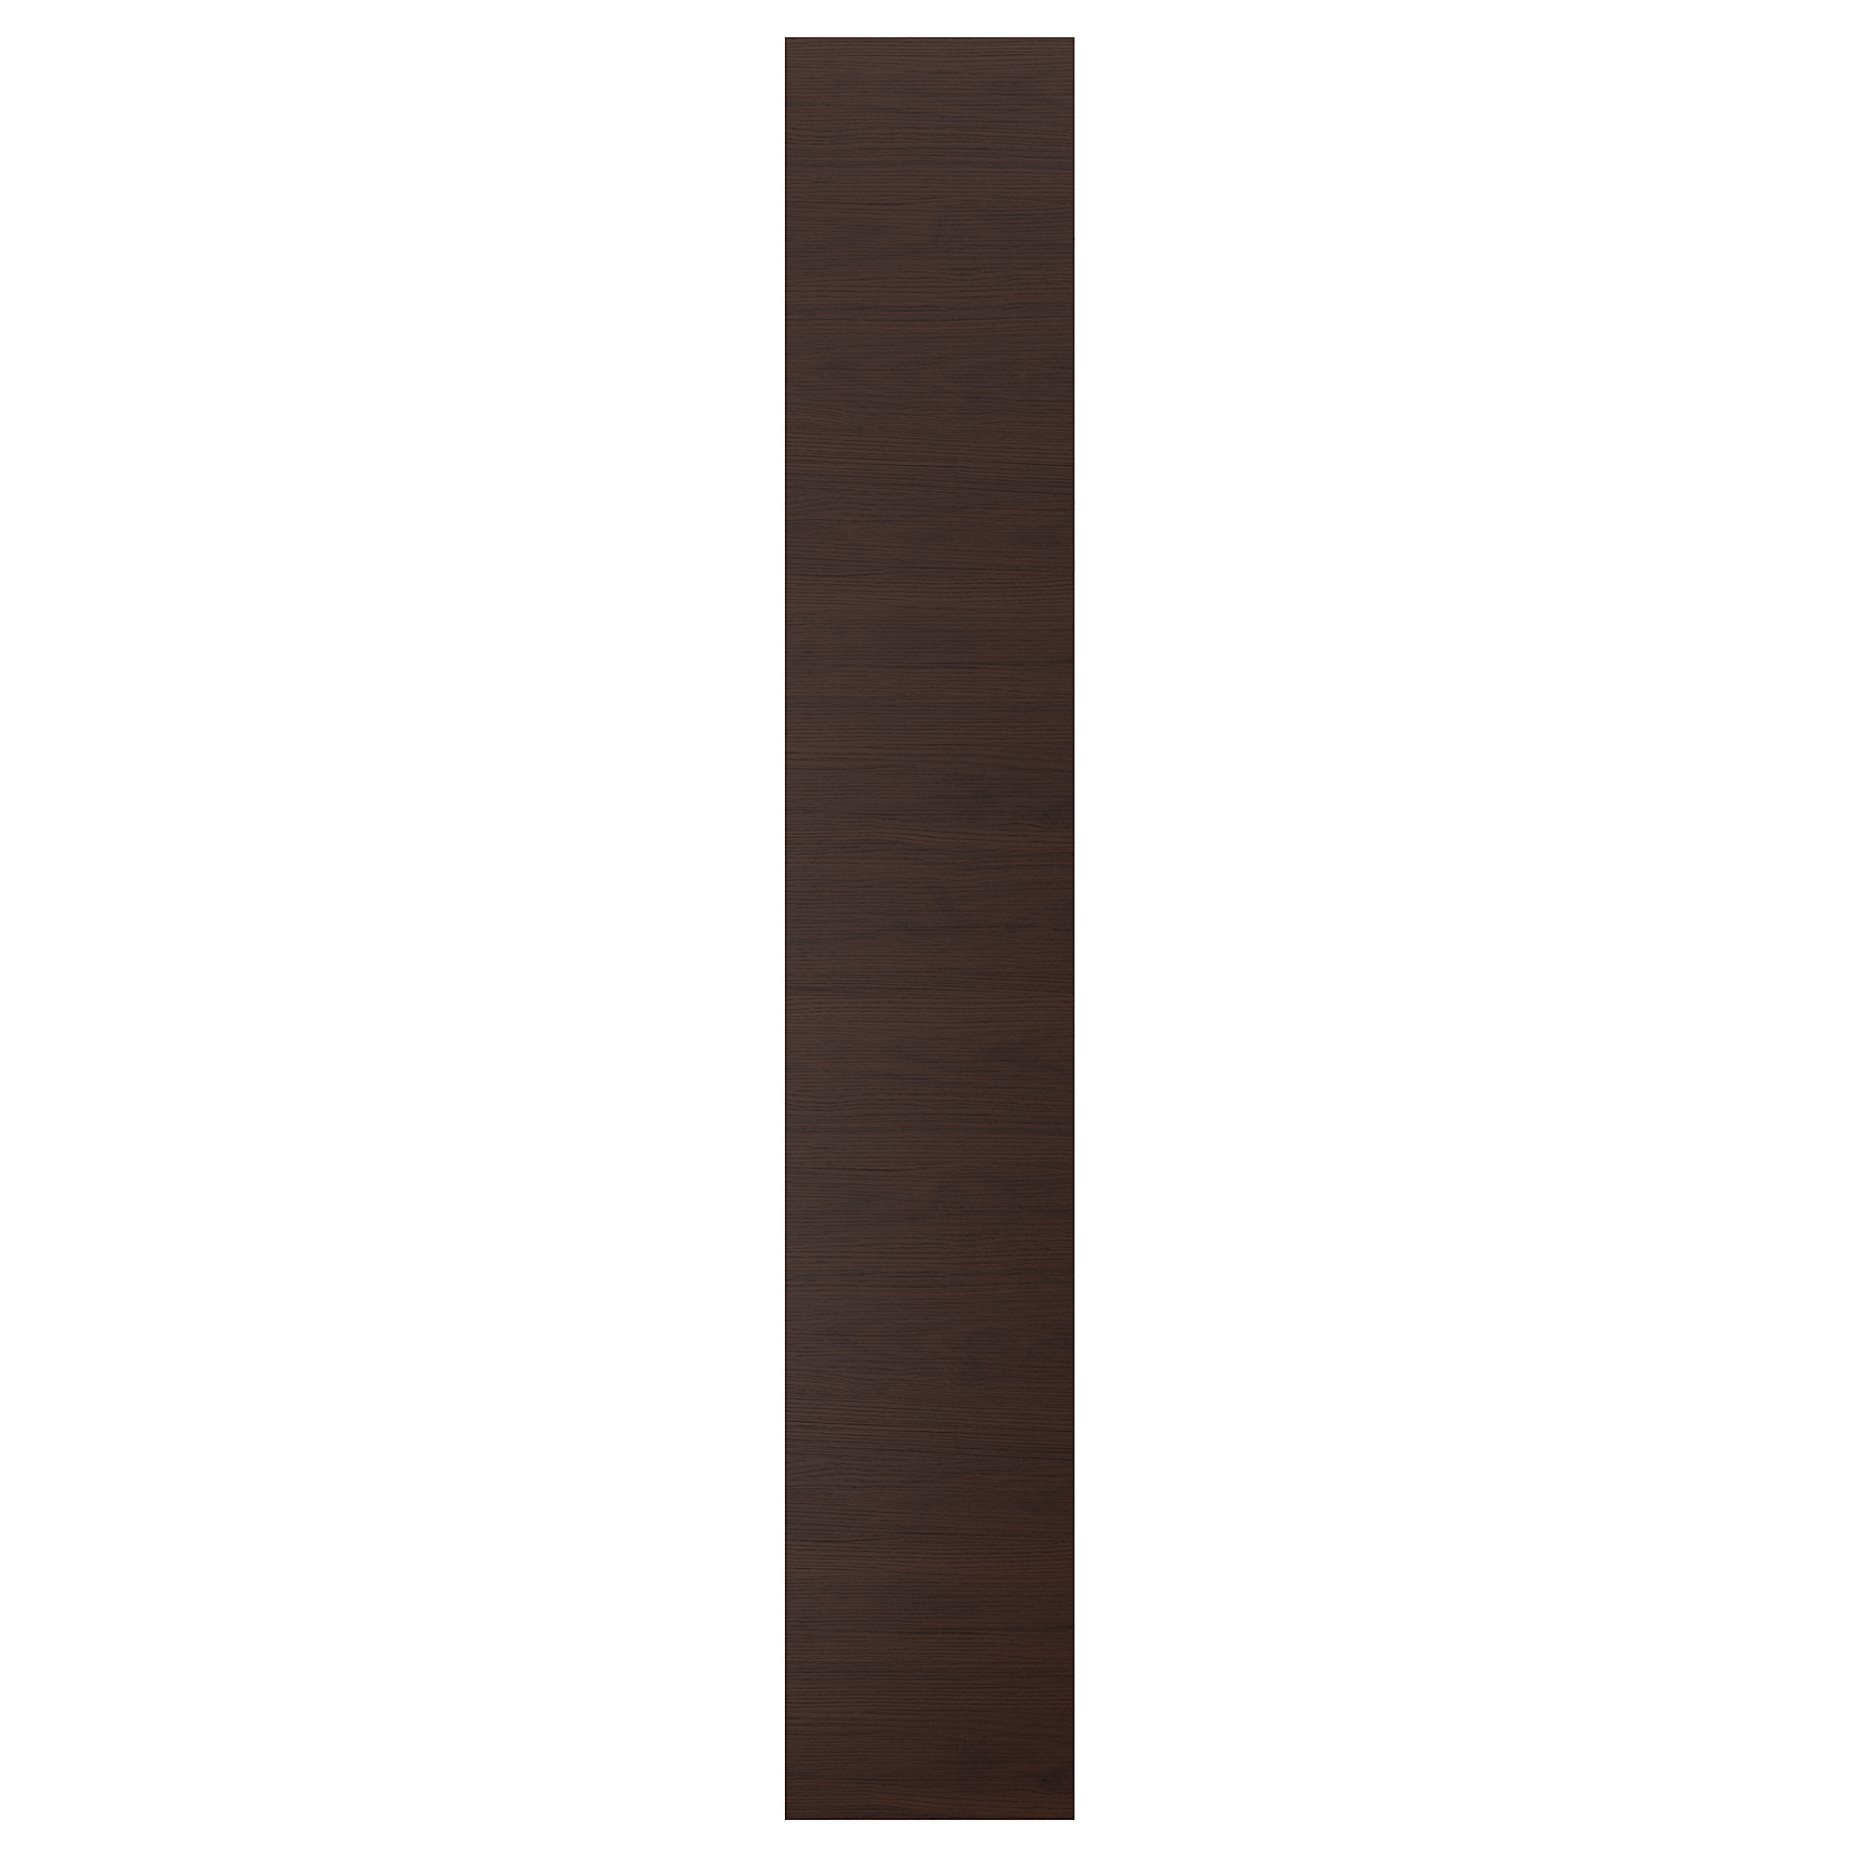 ASKERSUND, πλαϊνή επιφάνεια, 39x240 cm, 804.252.31